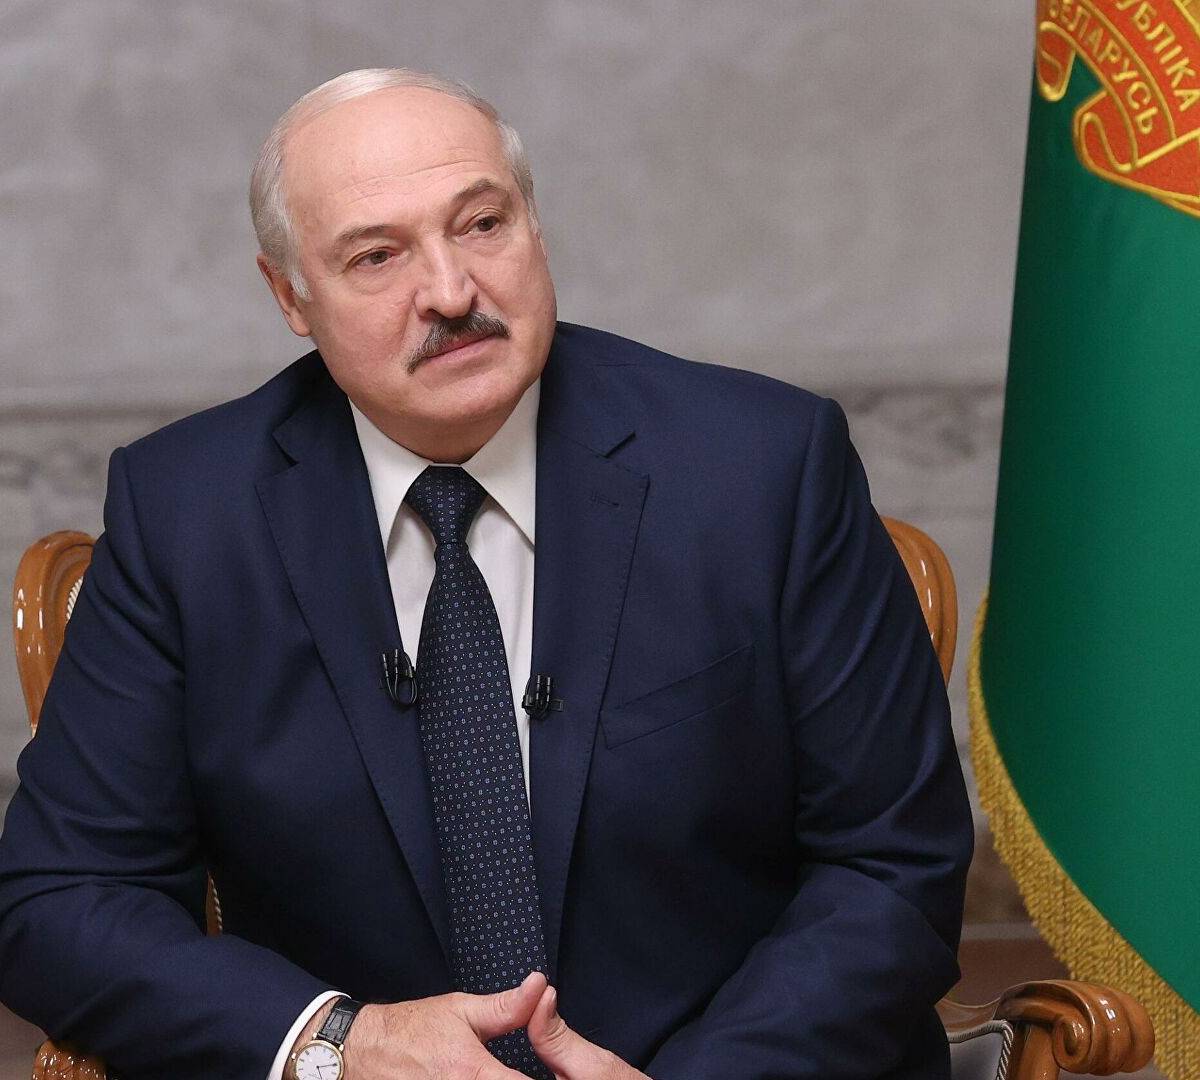 Лукашенко тянет время: эксперты о тактике президента Белоруссии